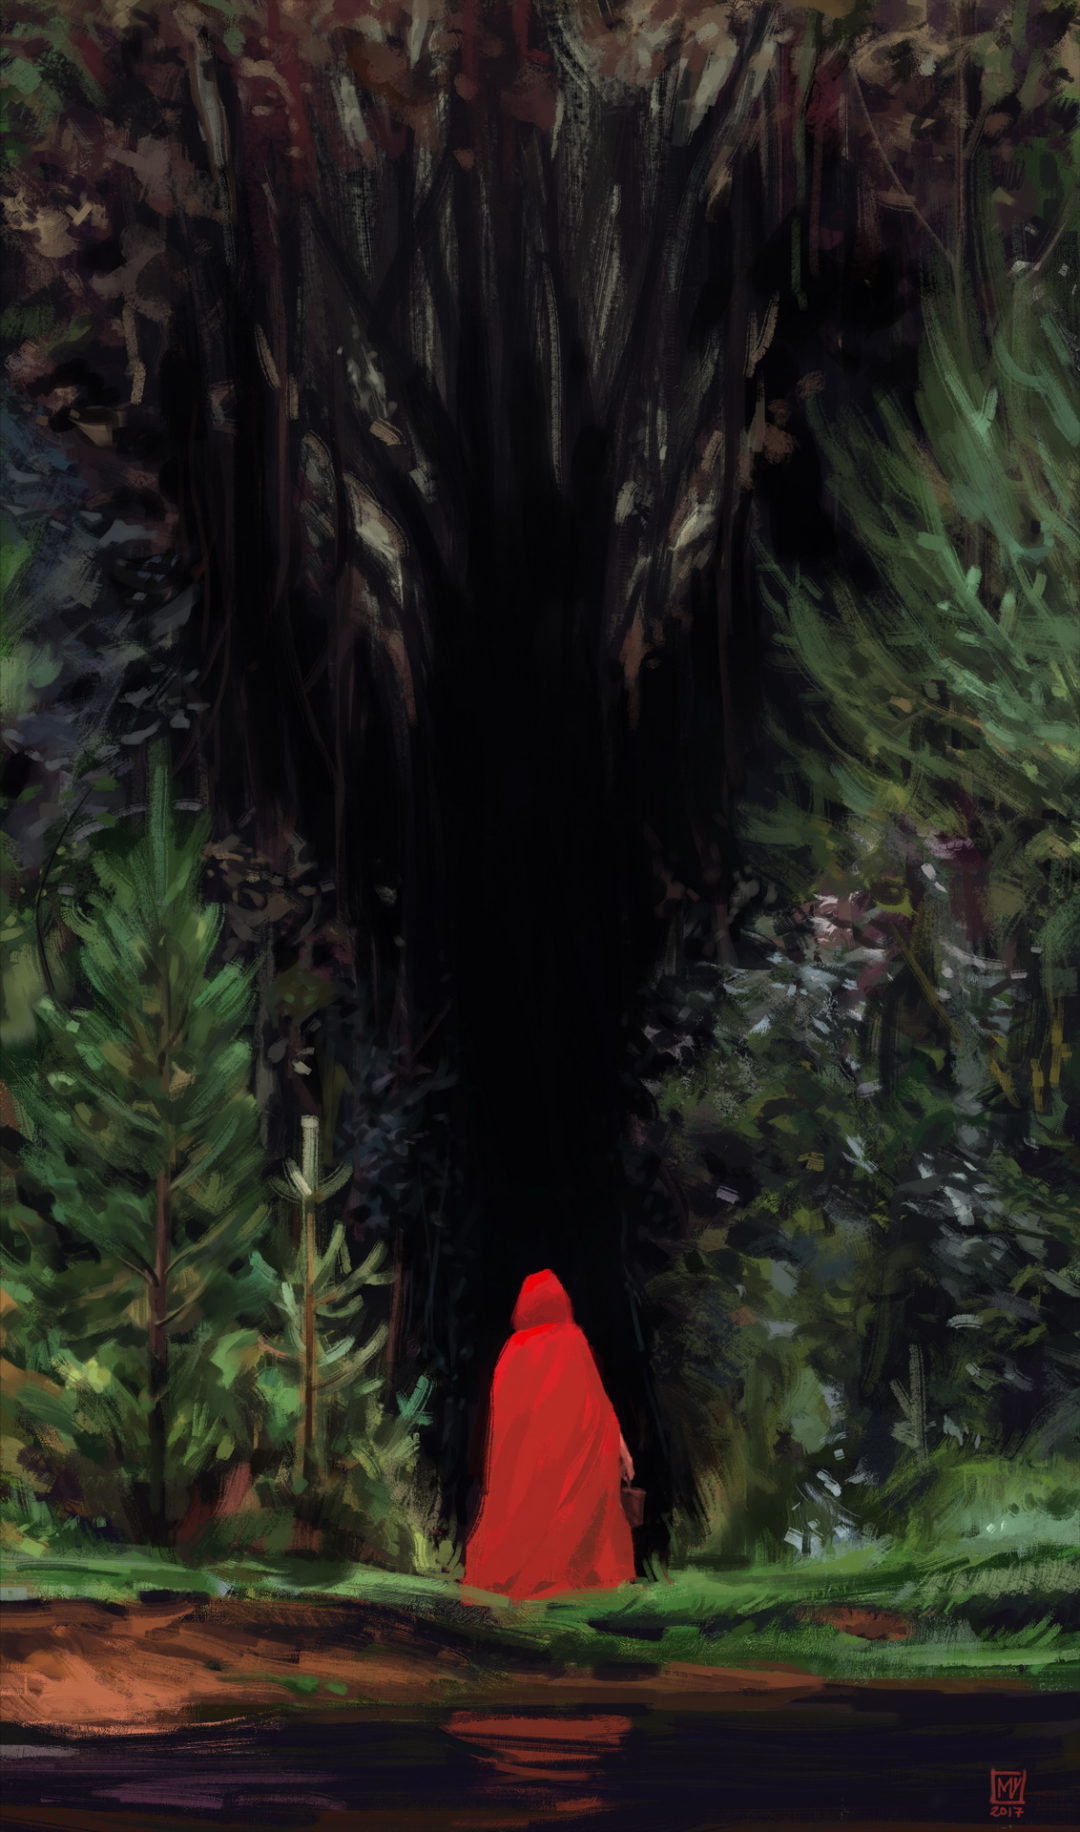 Caperucita Roja